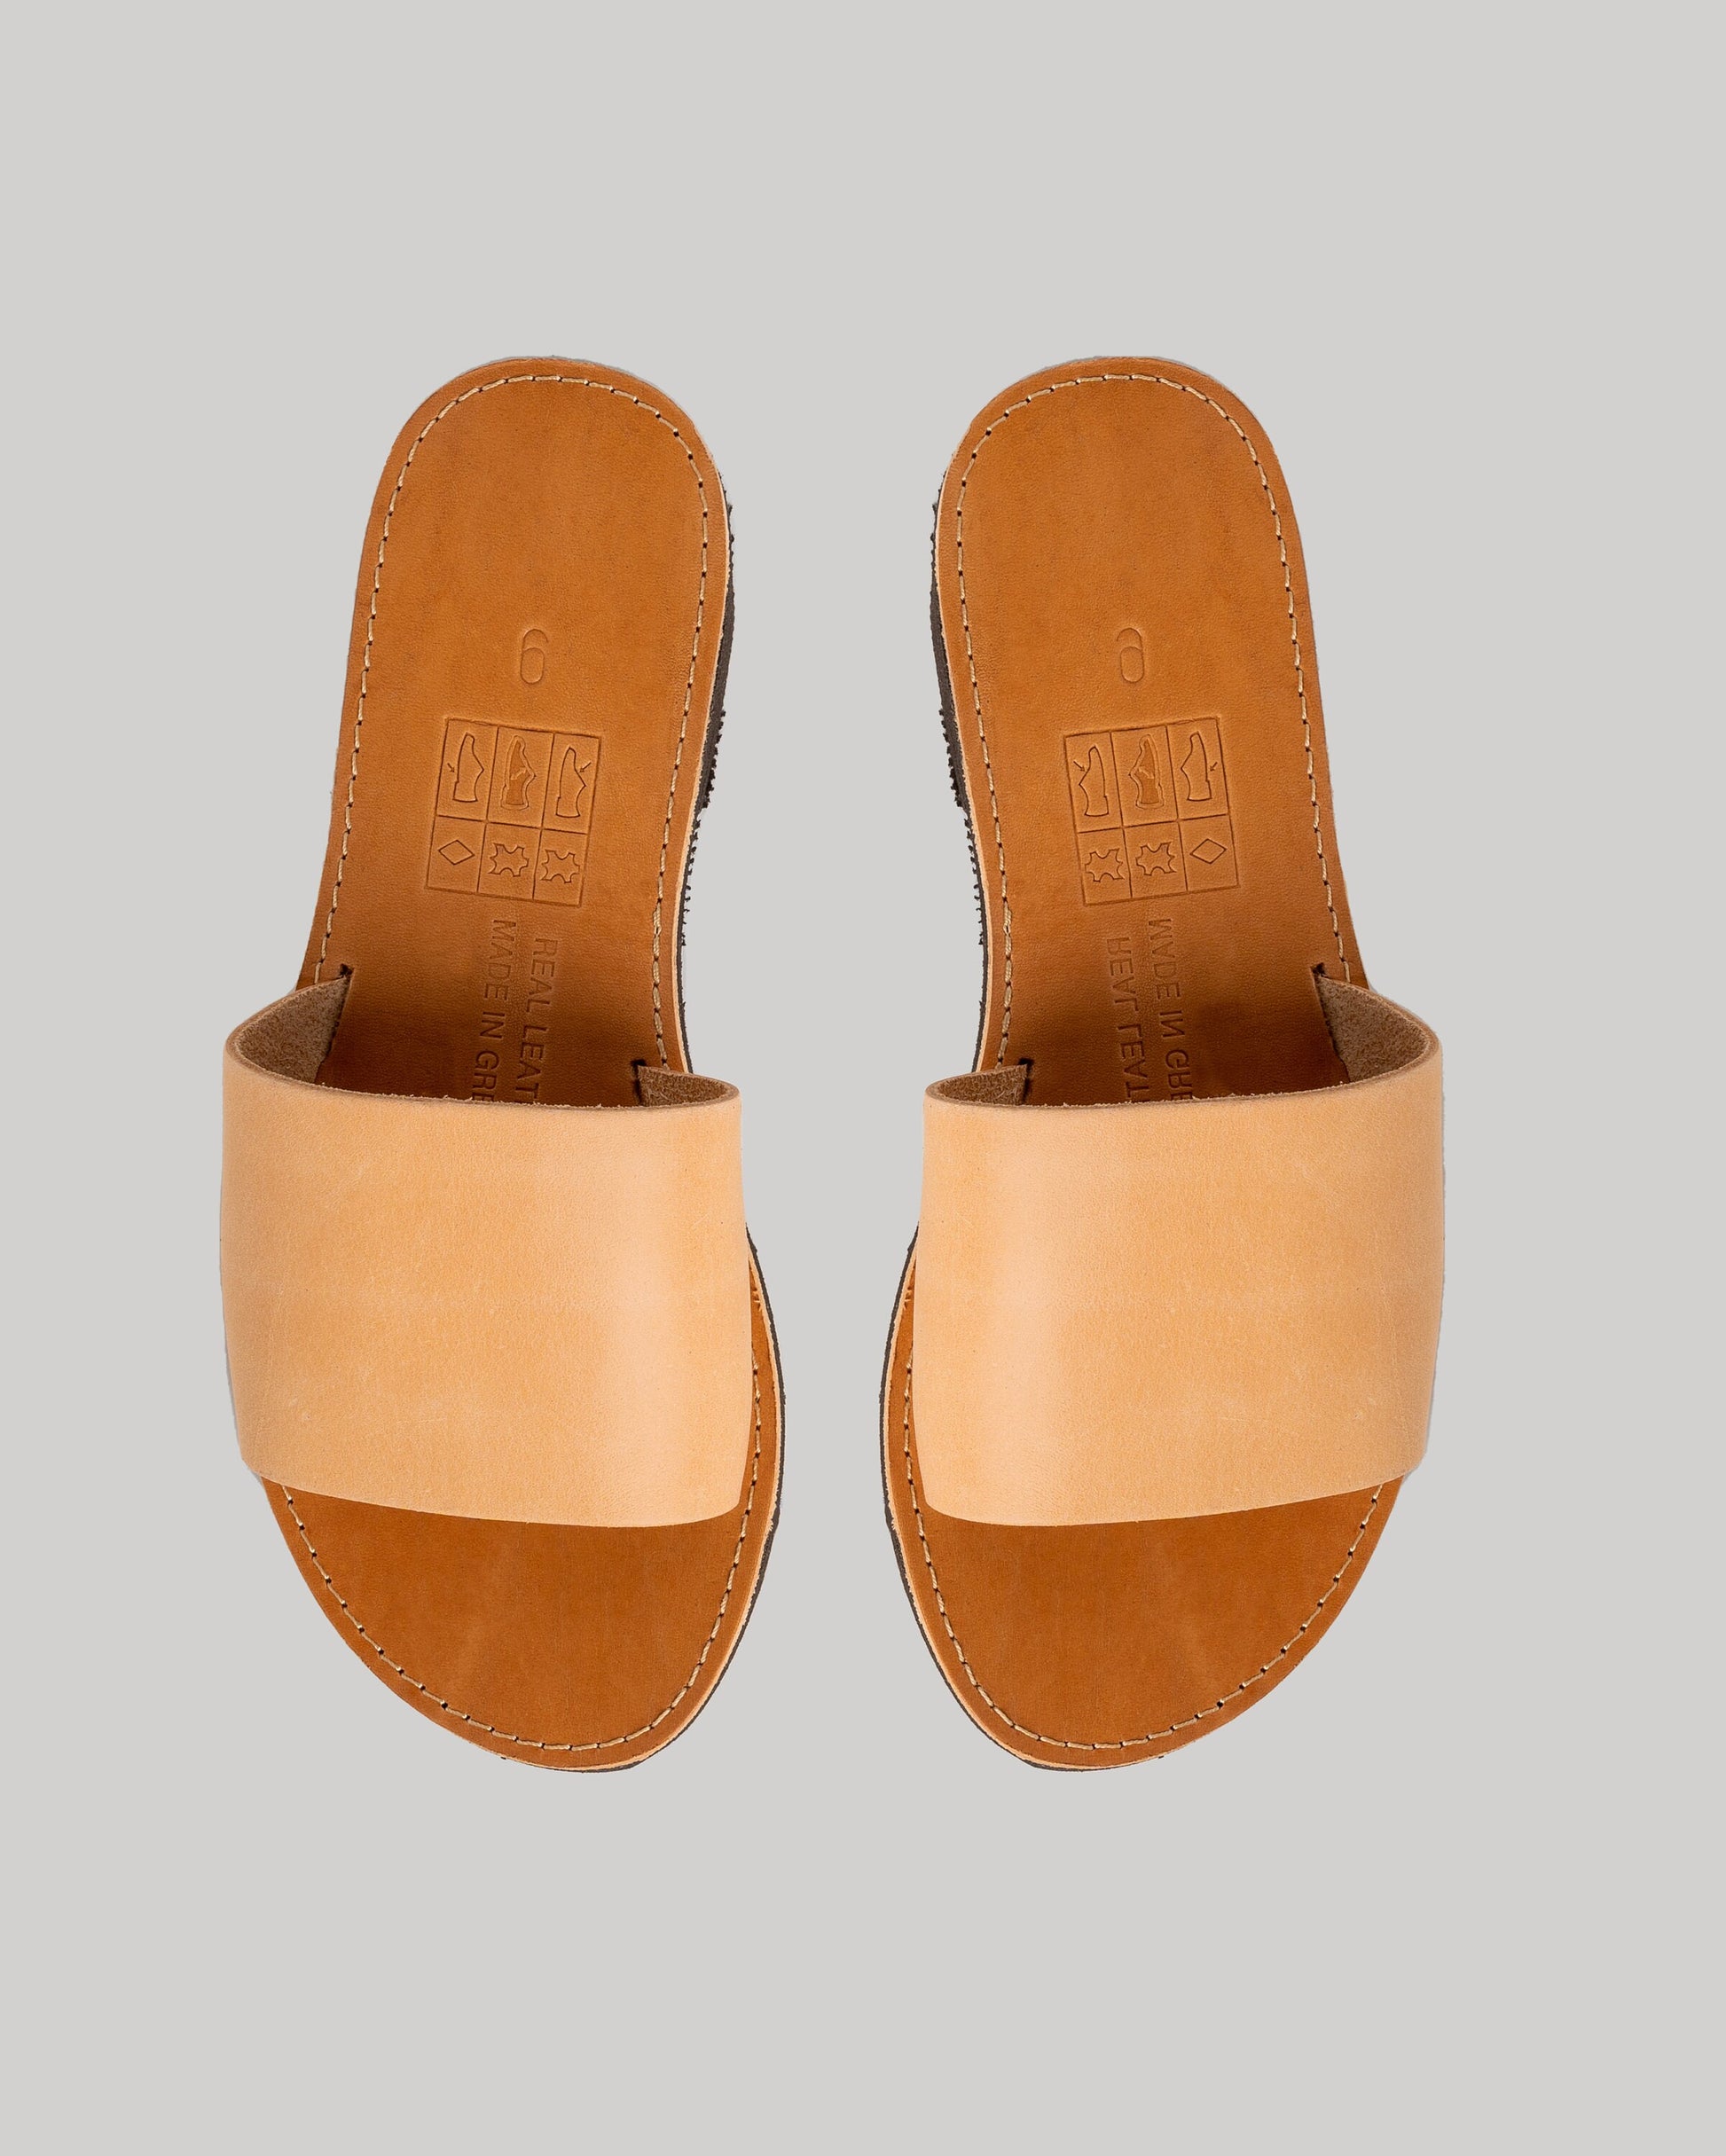 Leather women sandals, Leather slides women, Sandales grecques femme